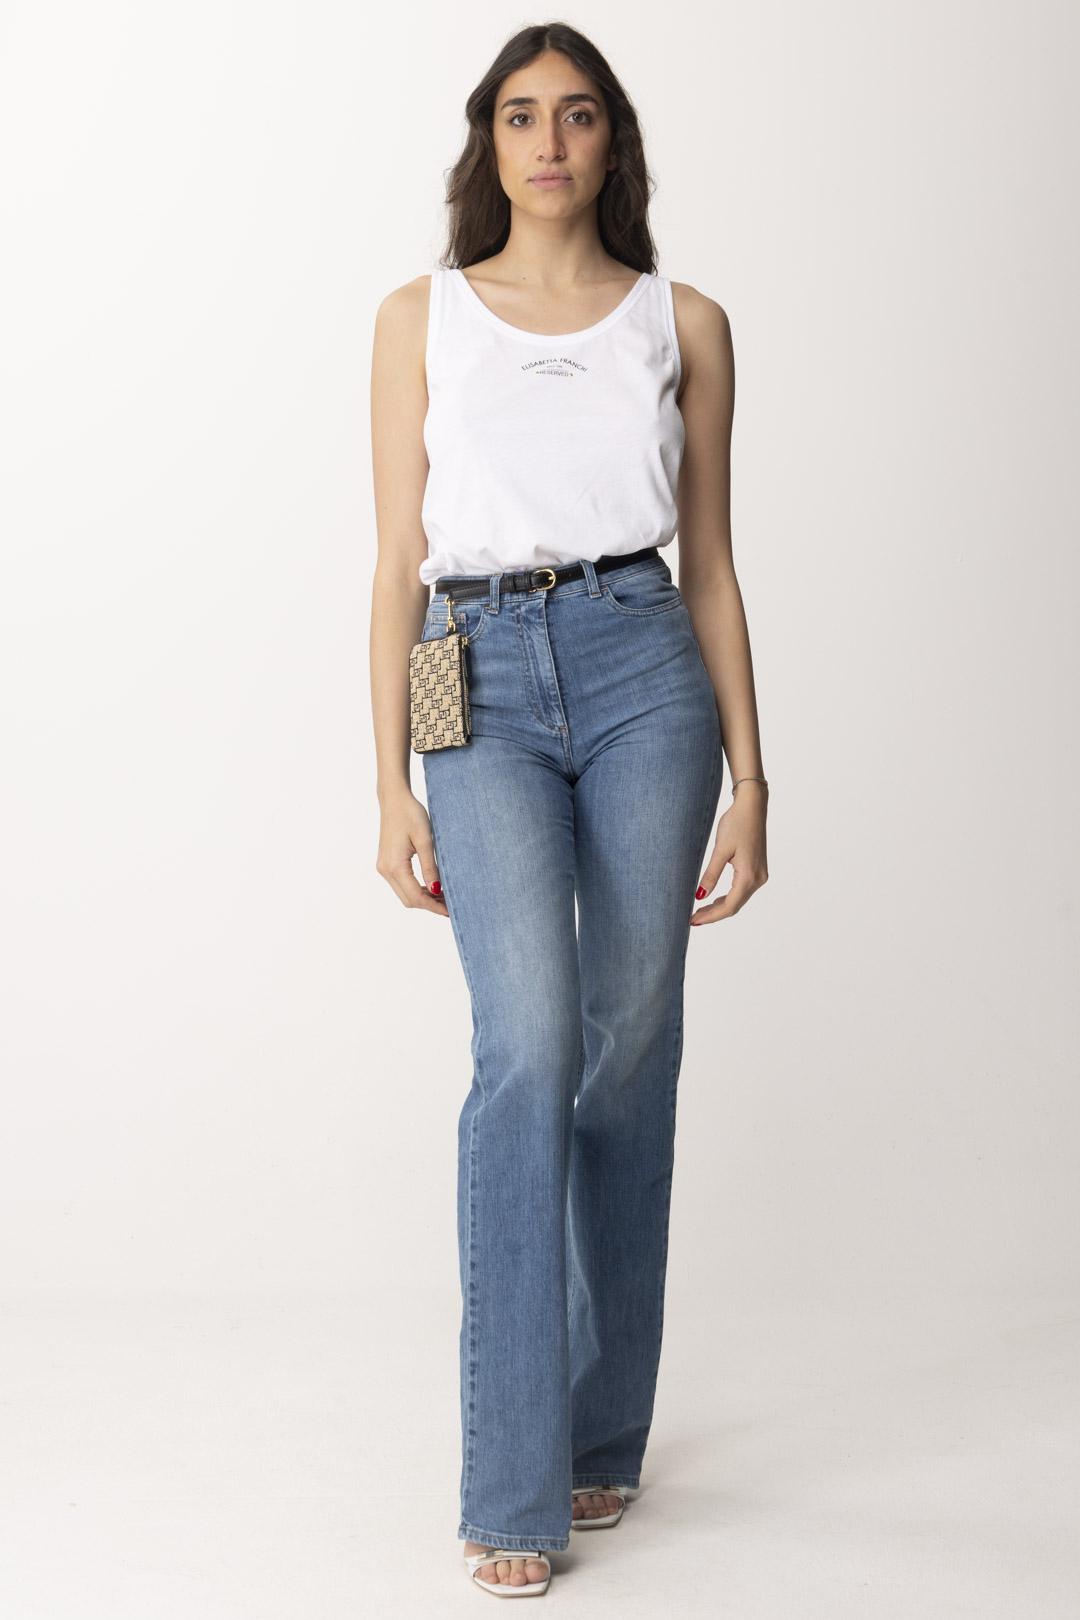 Vorschau: Elisabetta Franchi Ausgestellte Jeans mit Gürtel Light blue